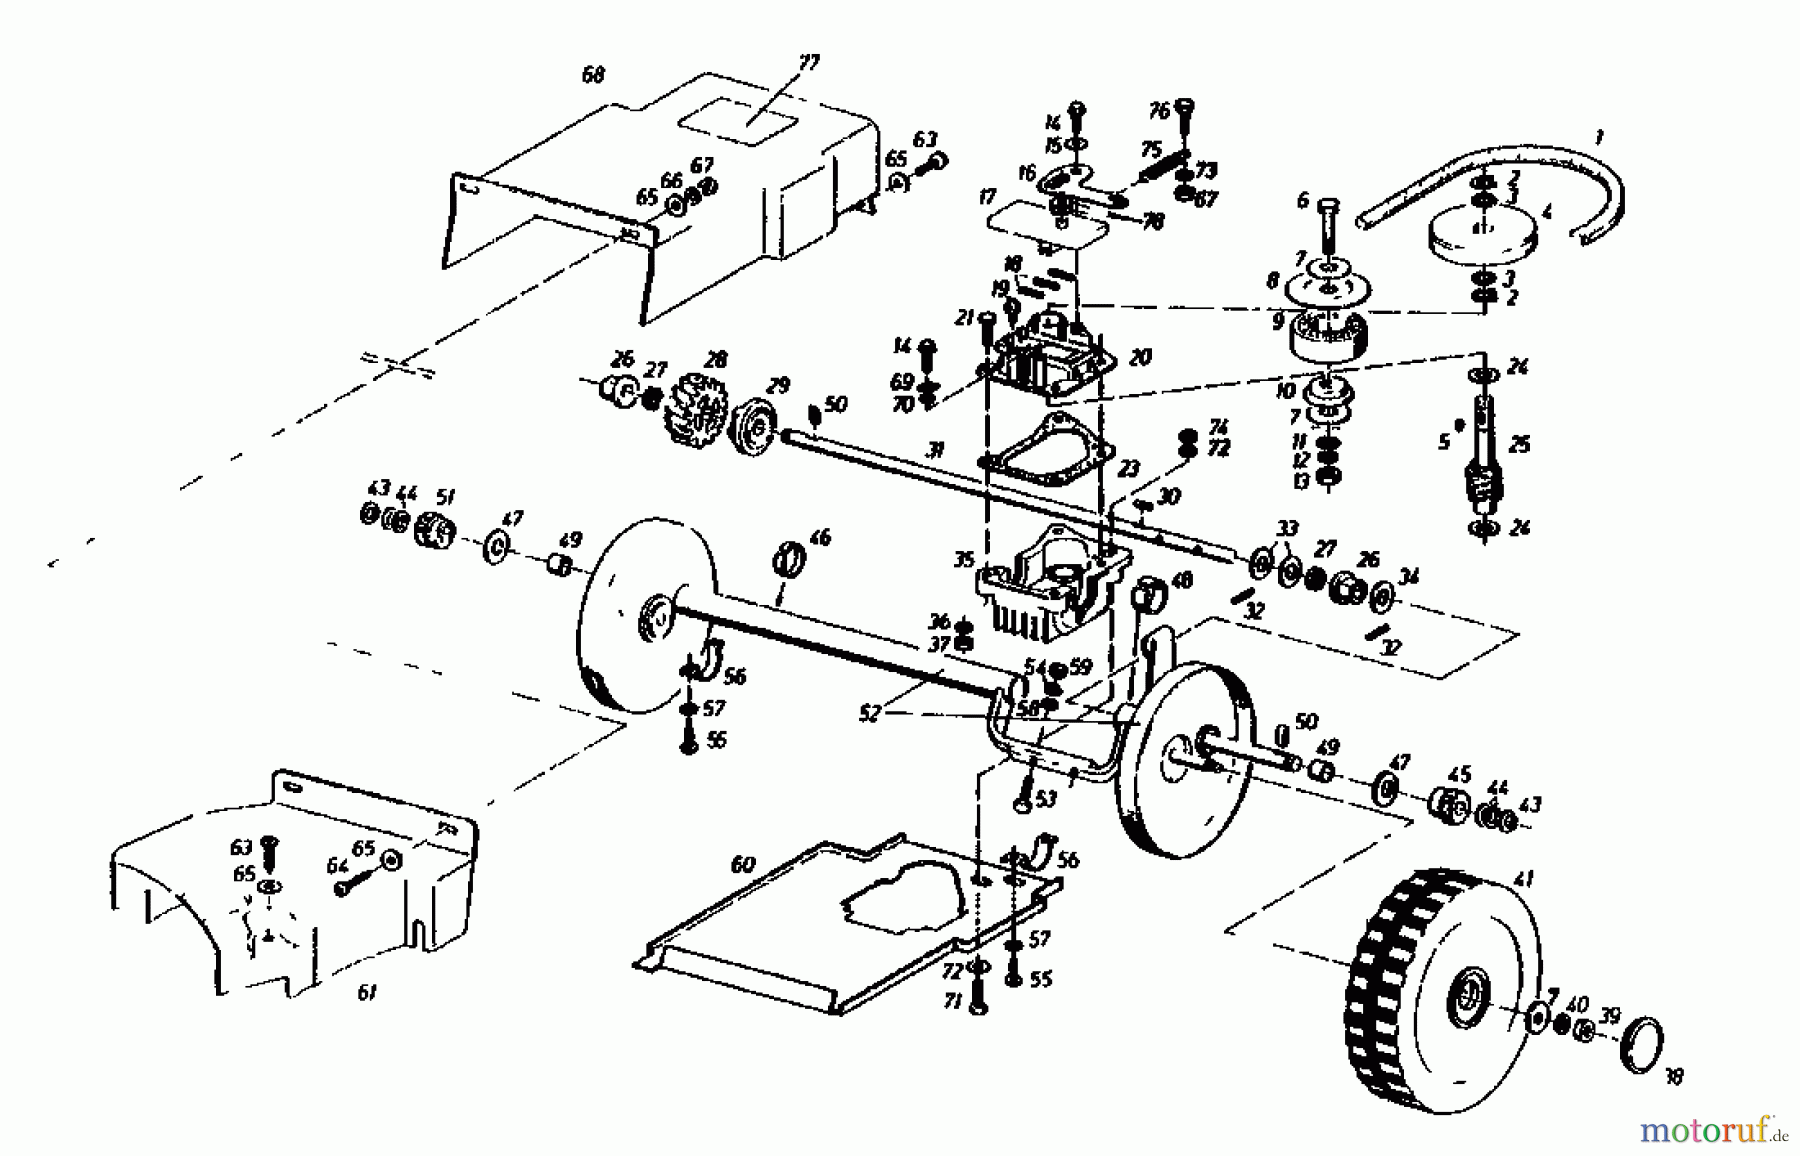  Gutbrod Petrol mower self propelled HB 55 R 02882.05  (1987) Gearbox